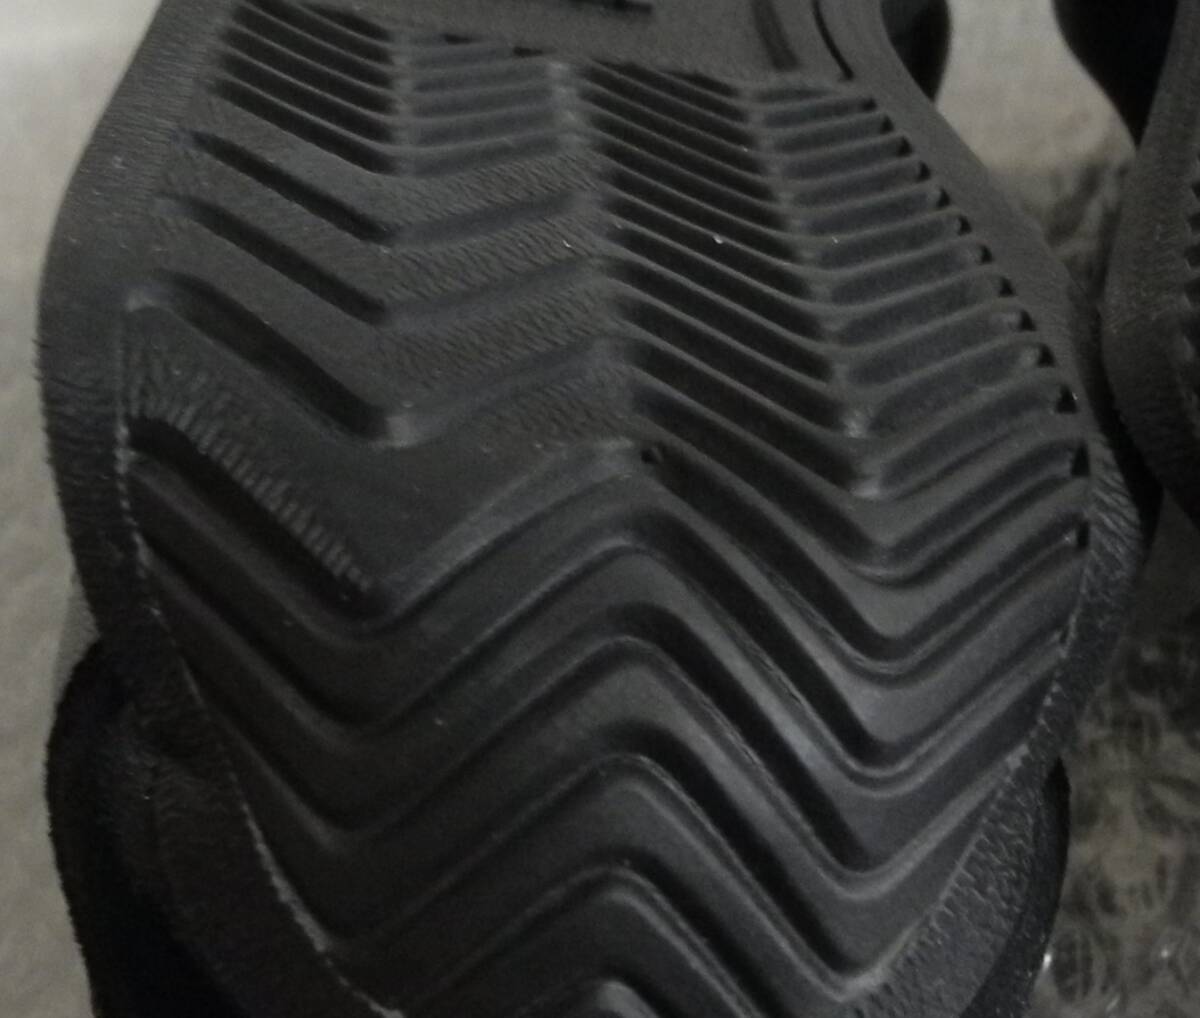 カントリー 2020年製 JP26.0cm GX2507 天然皮革 生産終了 adidas country og 黒 トリプルブラック オールブラック 本革_画像10